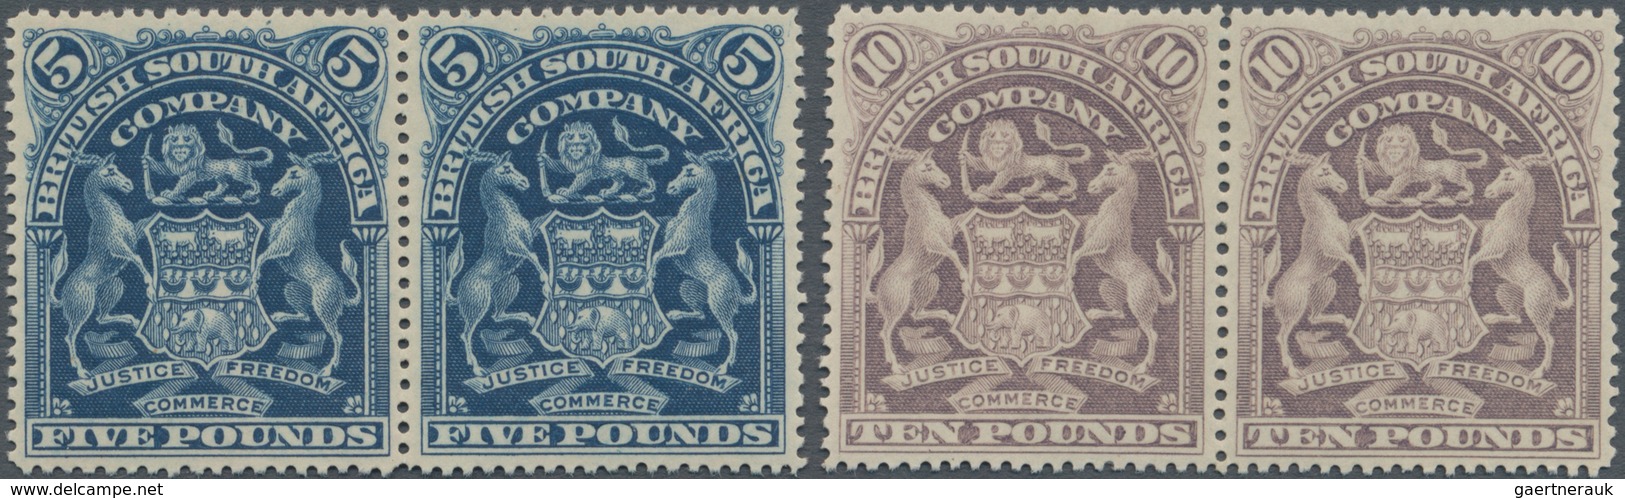 Britische Südafrika-Gesellschaft: 1901, £5 Deep Blue And £10 Lilac, Each In Horizontal Pair, Unused - Unclassified